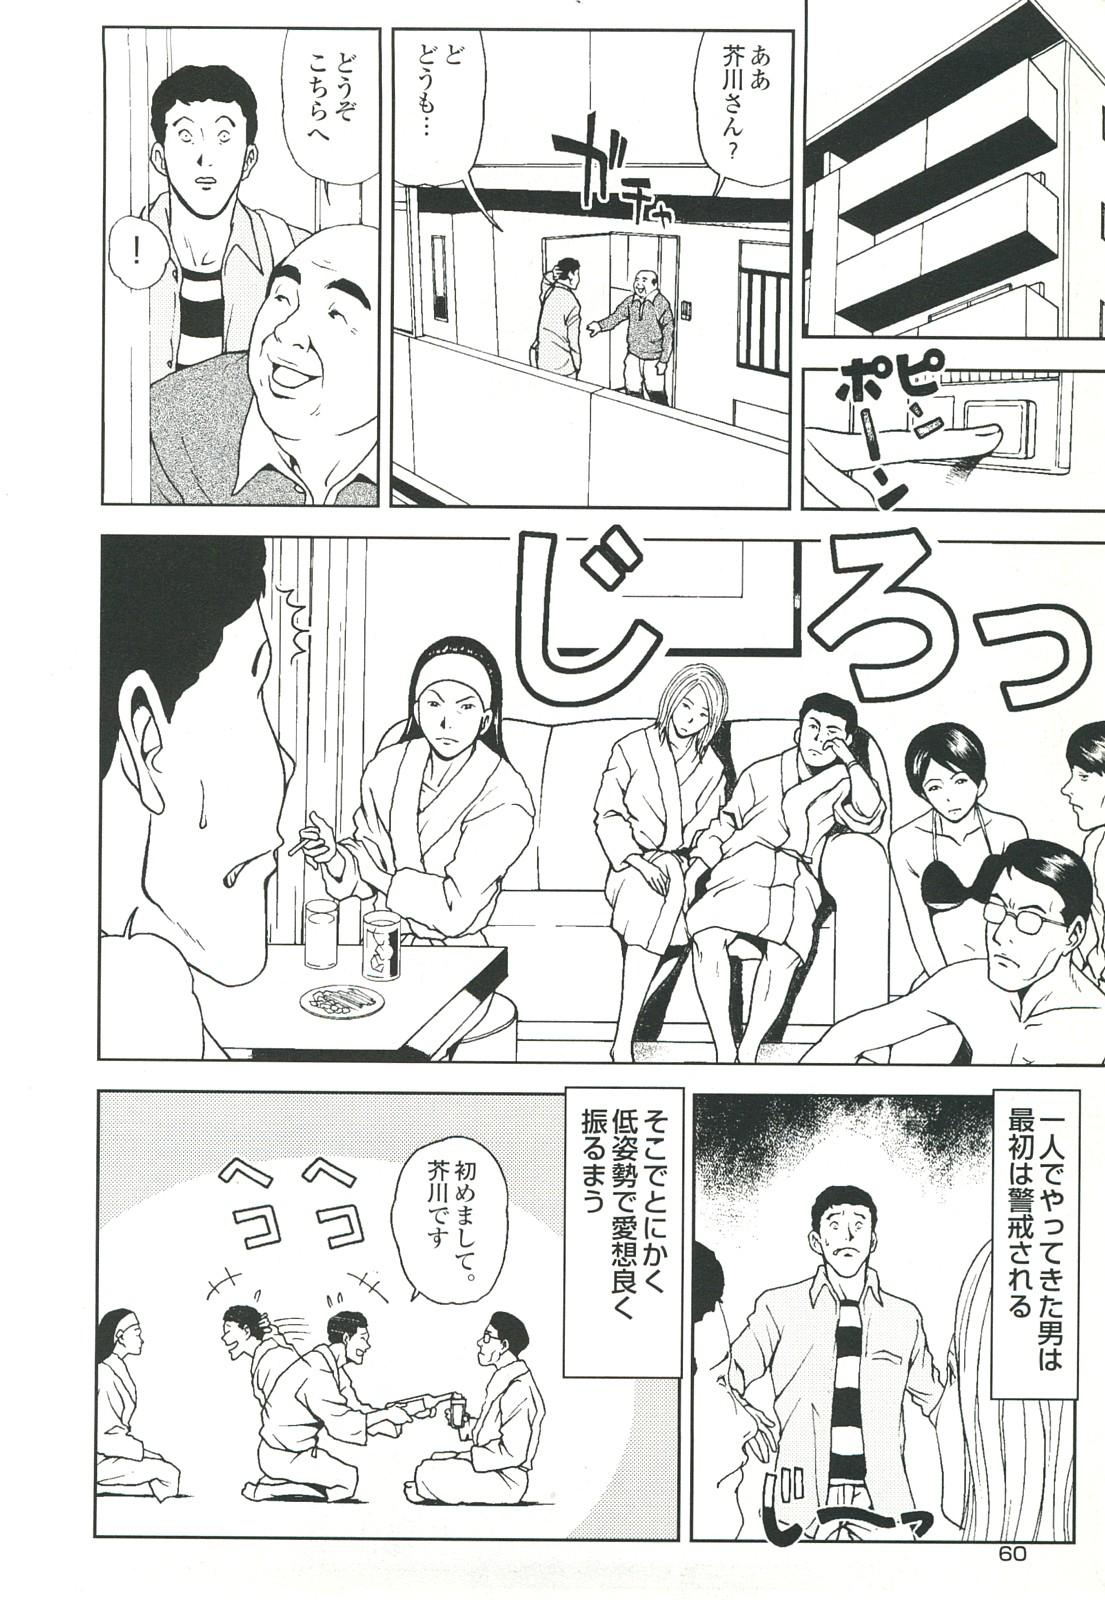 コミック裏モノJAPAN Vol.18 今井のりたつスペシャル号 59